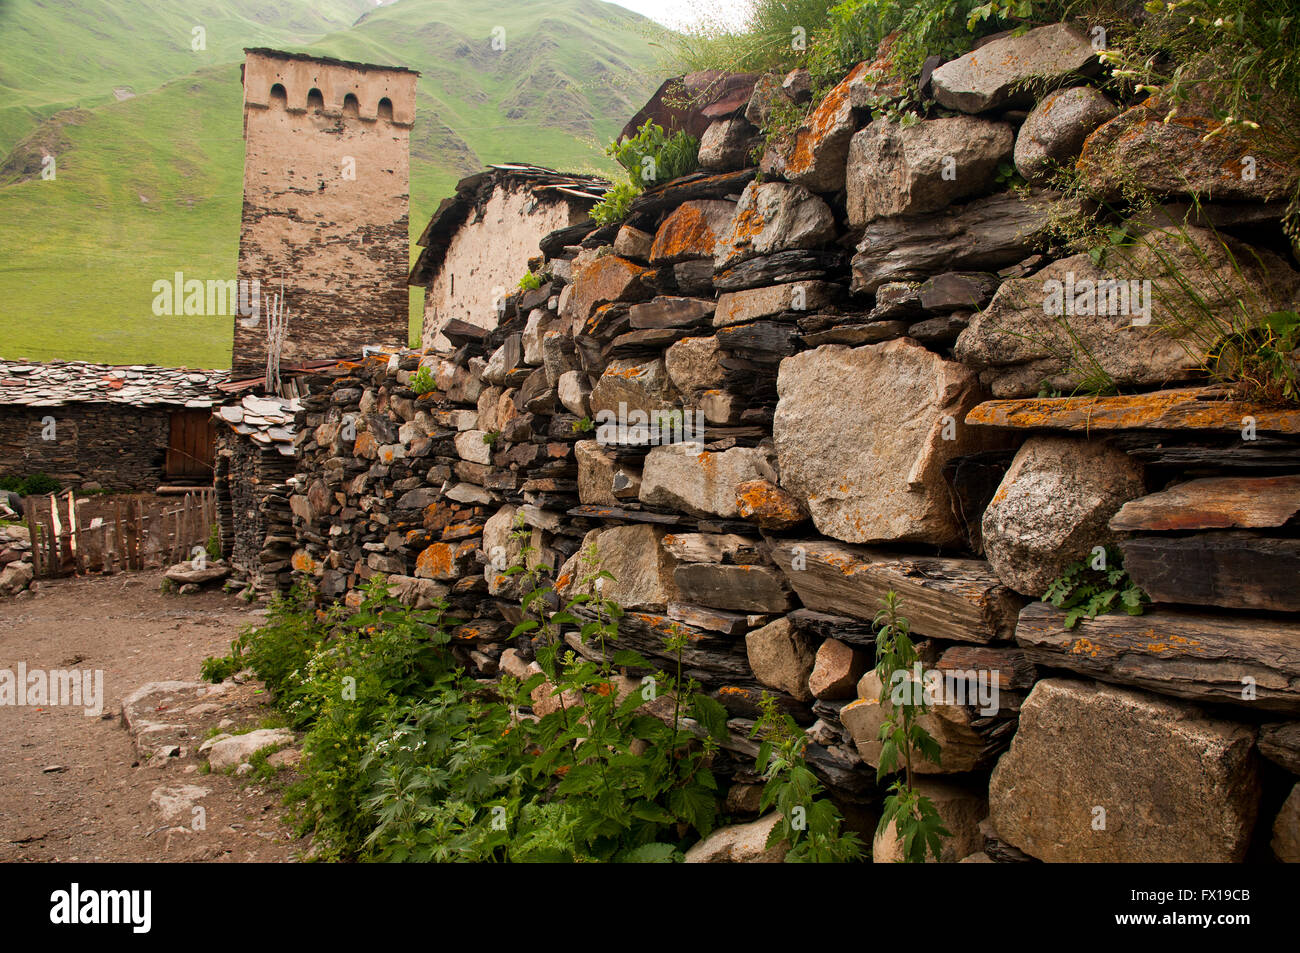 Ushguli o Ushkuli è una comunità di villaggi situati in corrispondenza della testa del Enguri gorge in Alta Svaneti, Georgia. Foto Stock